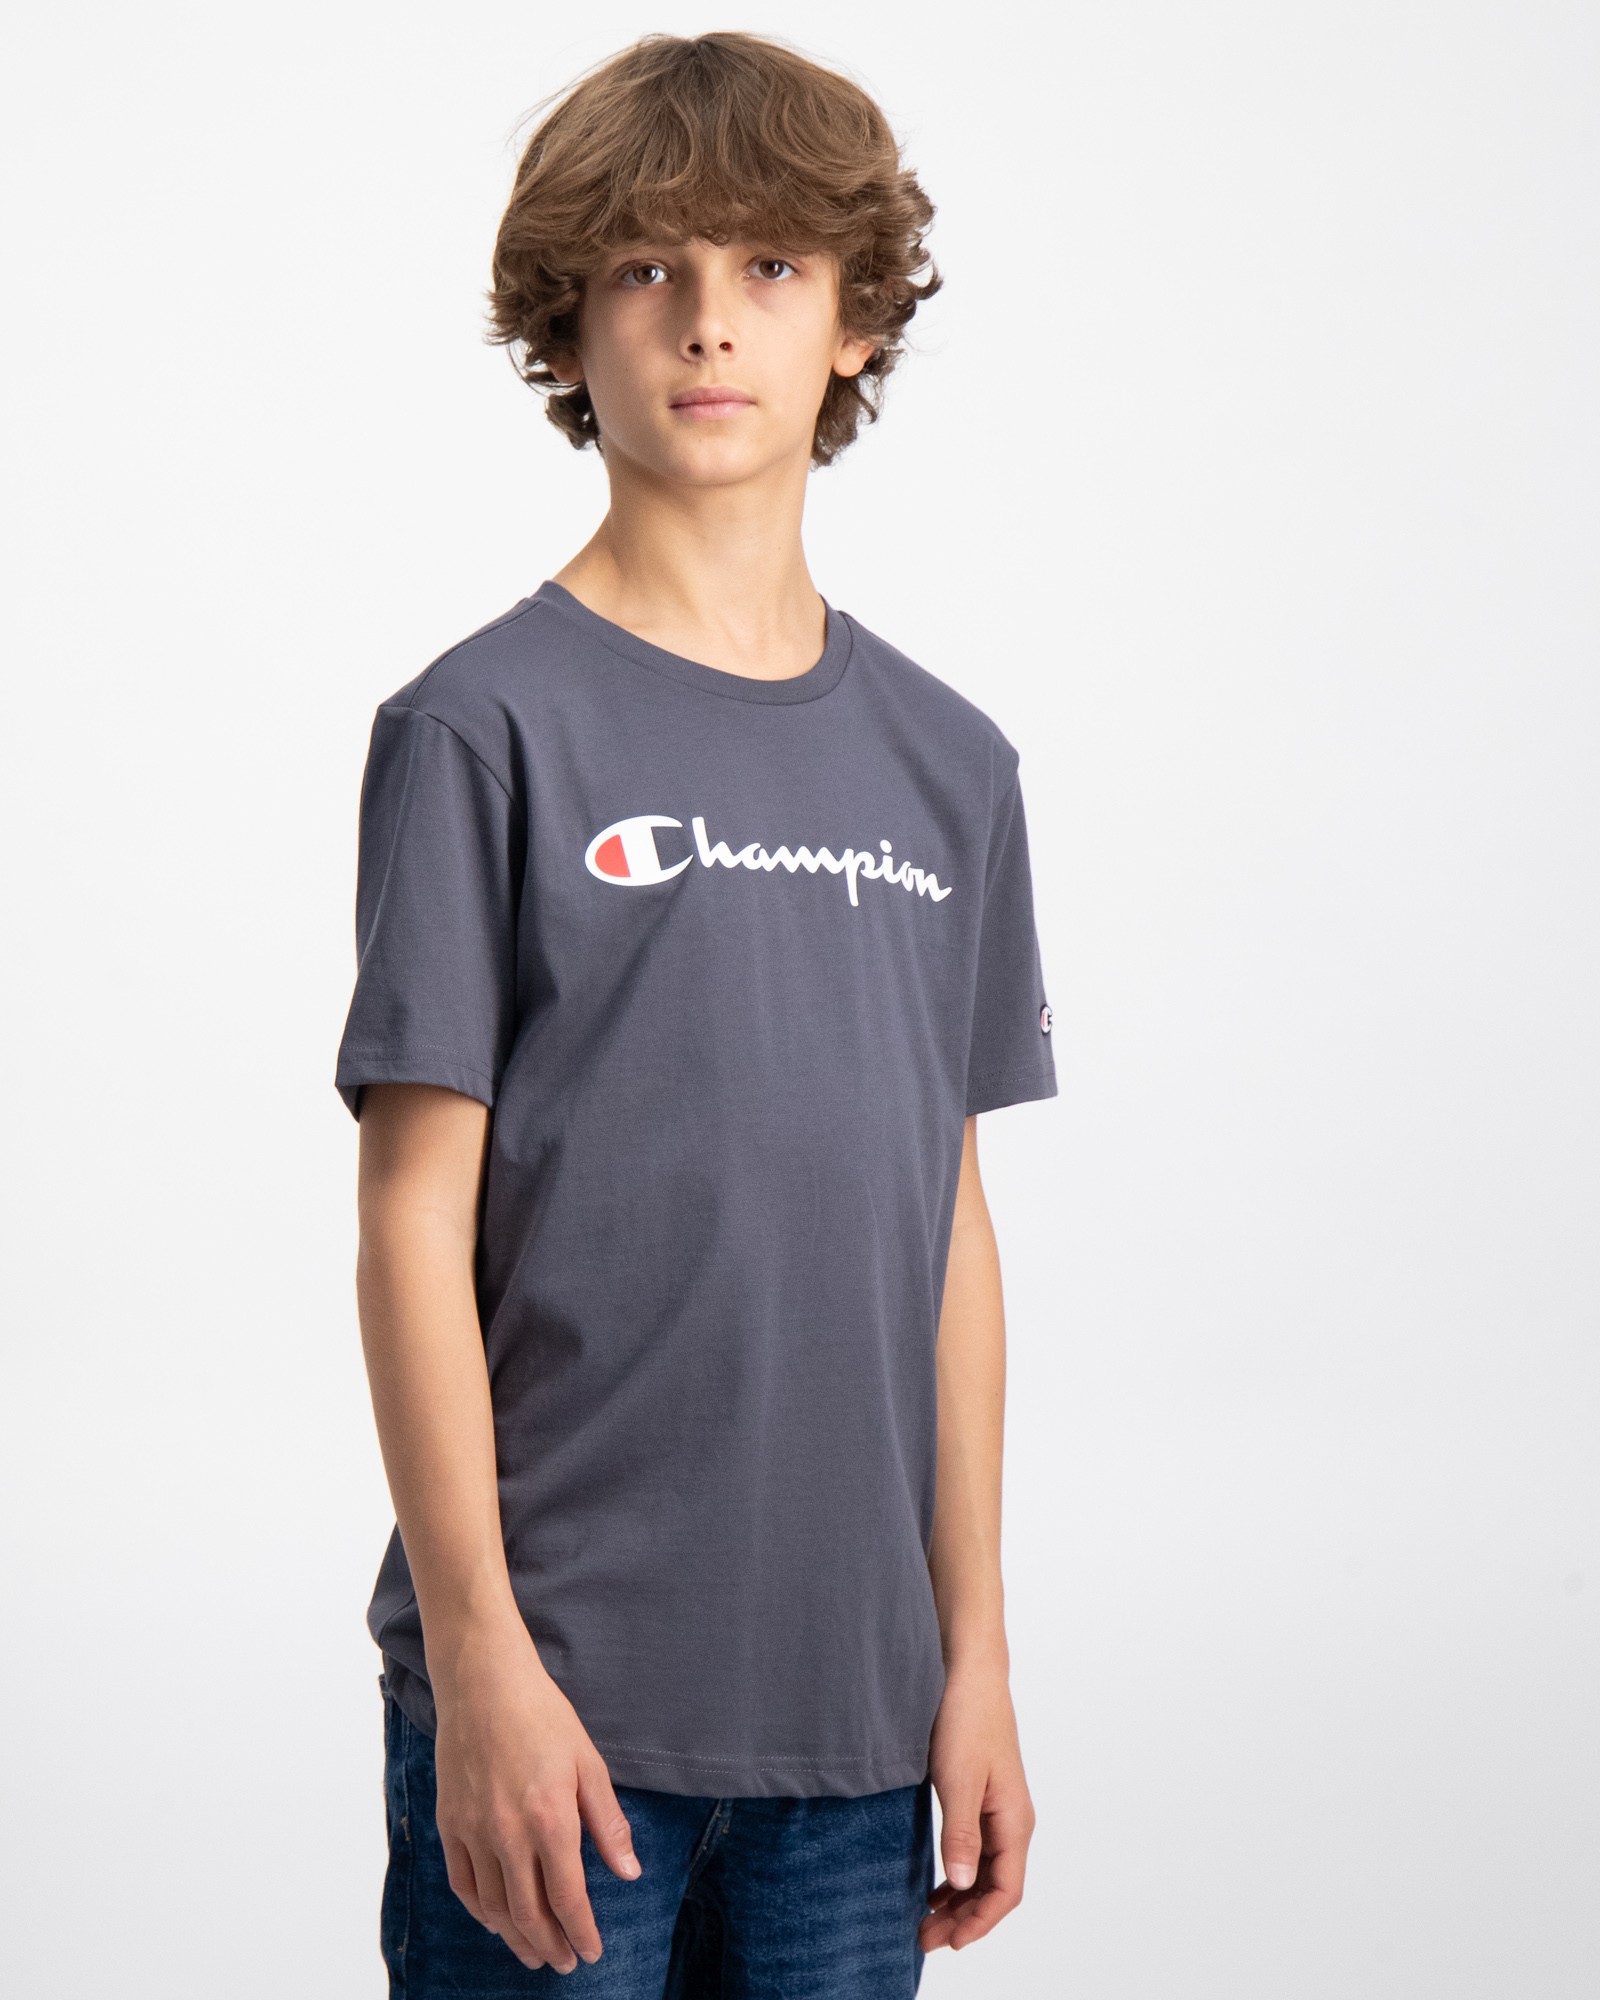 Grau Crewneck T-Shirt für Jungen | Kids Brand Store | Sport-T-Shirts